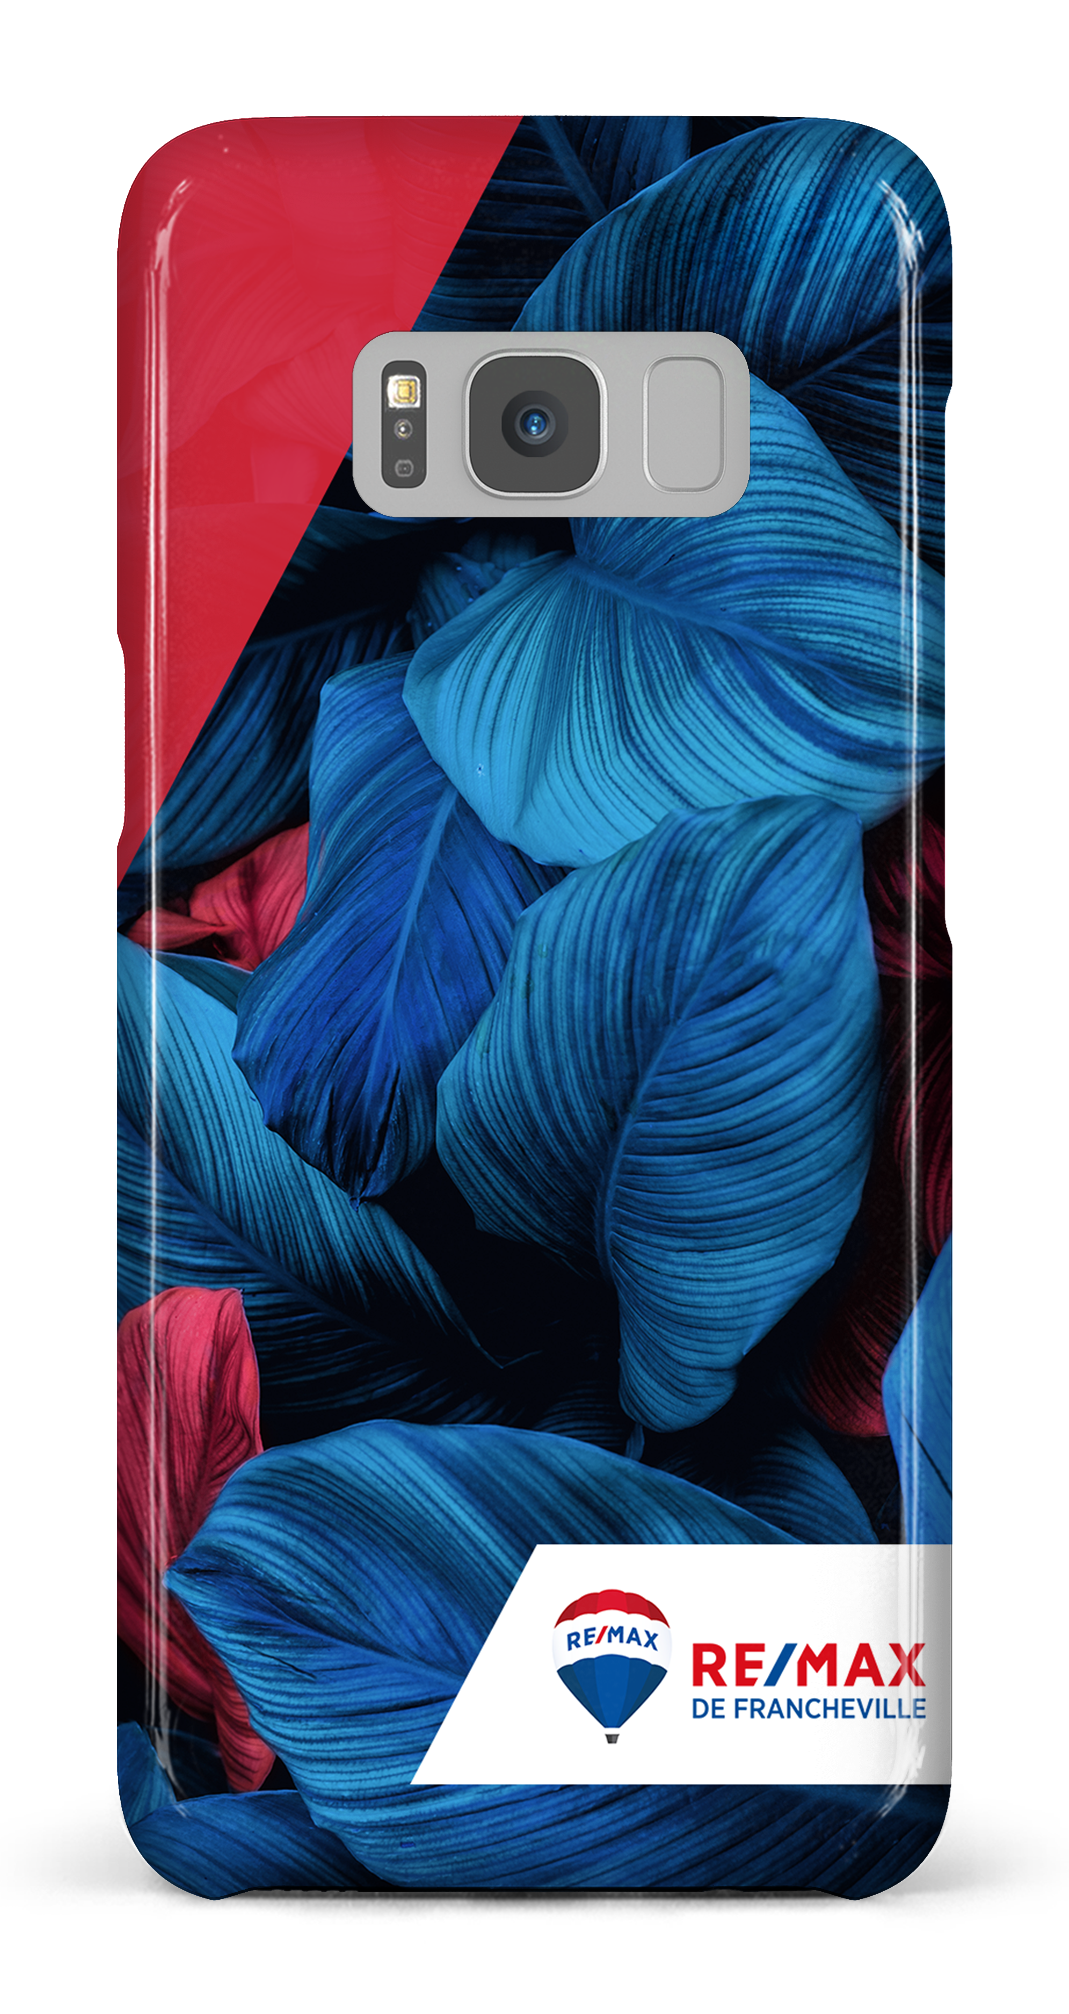 Végétation bicolorede Francheville - Galaxy S8